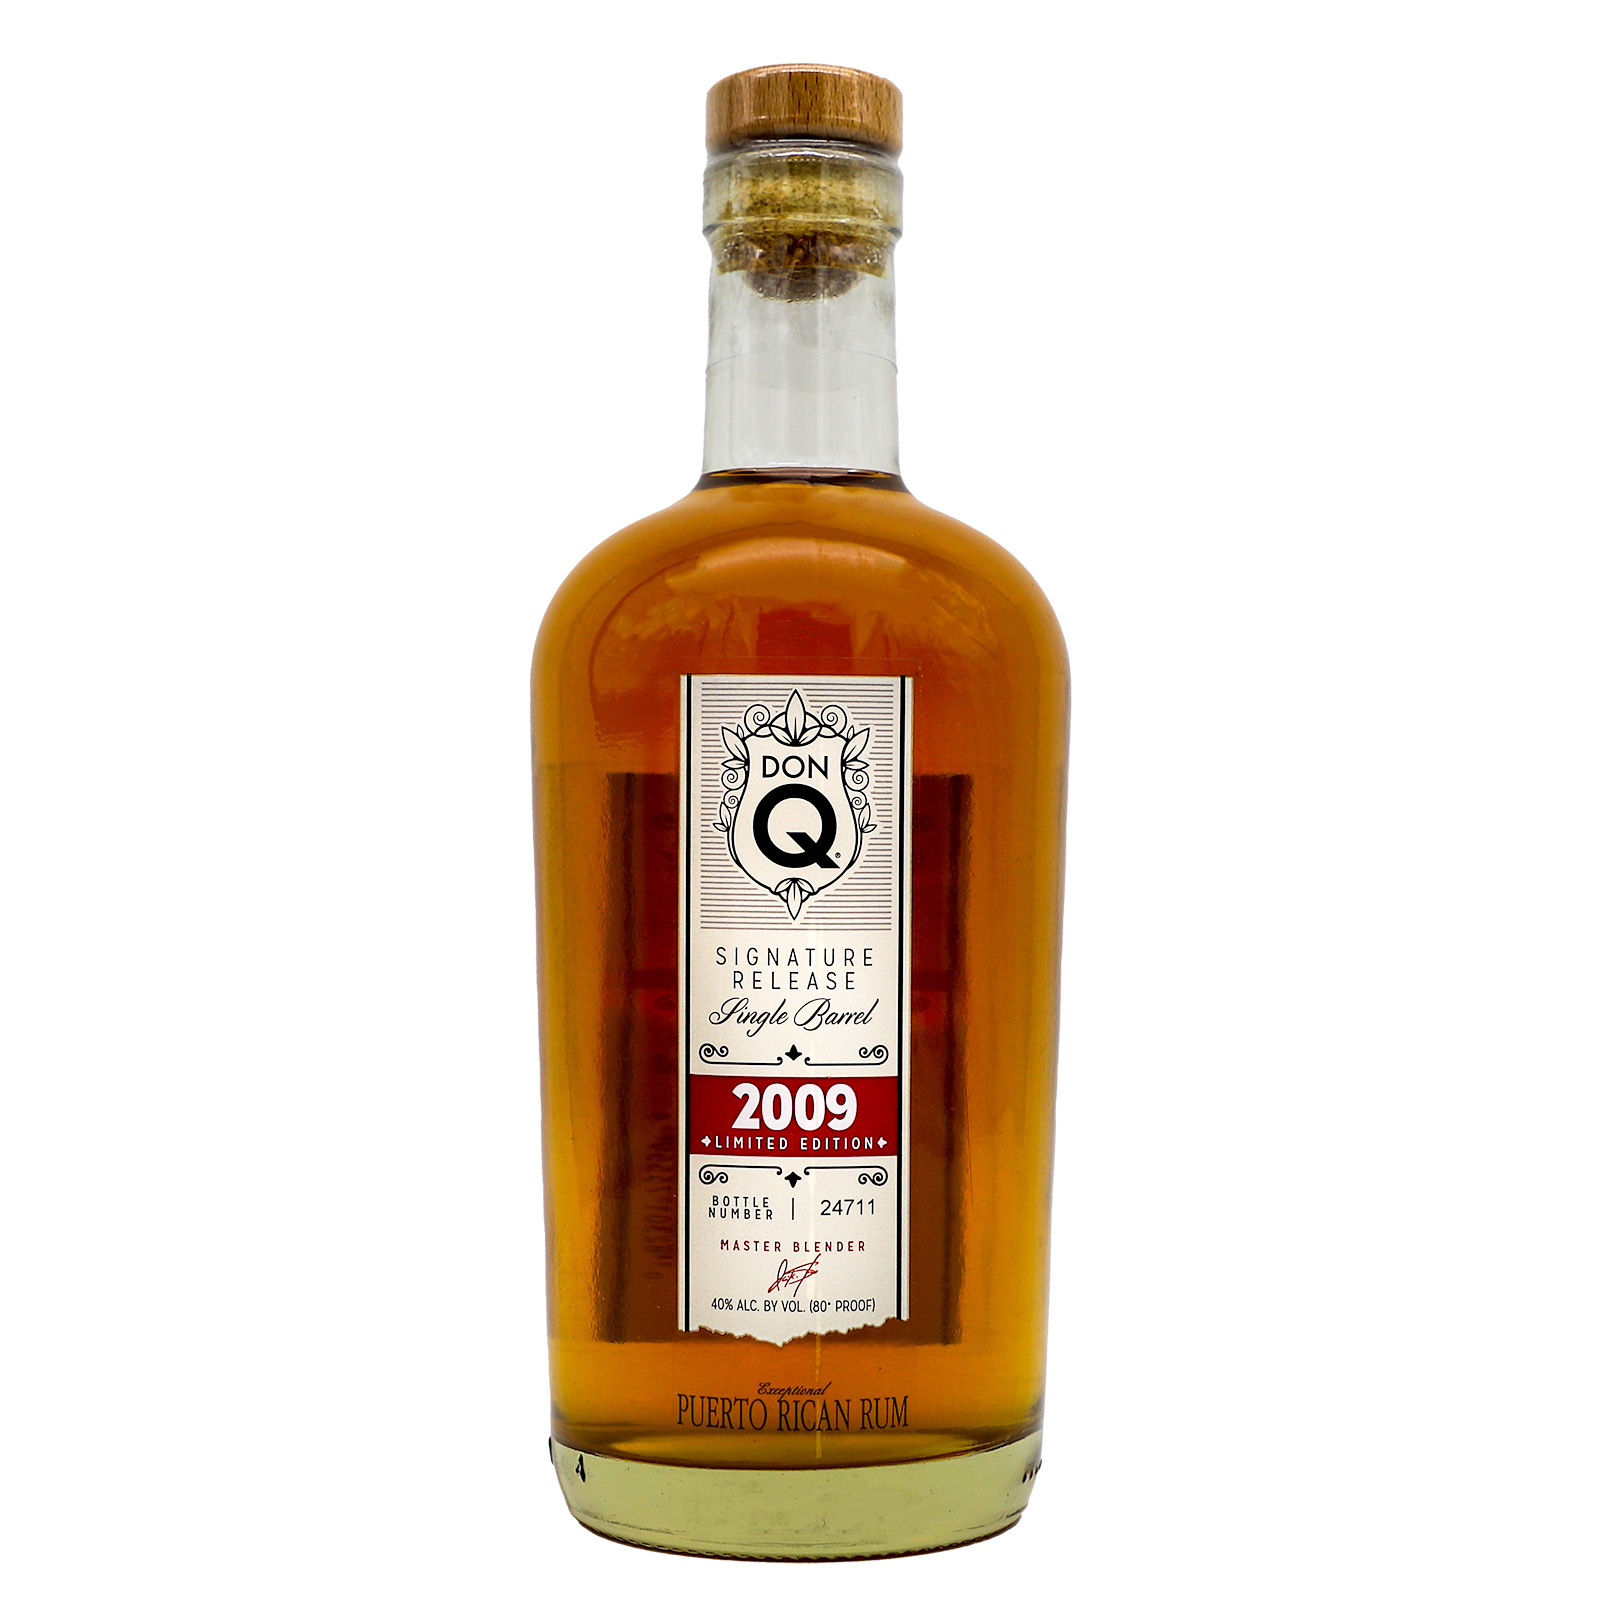 Don Q Signature Release Single Barrel 2009 Premium Aged Rum 750ml